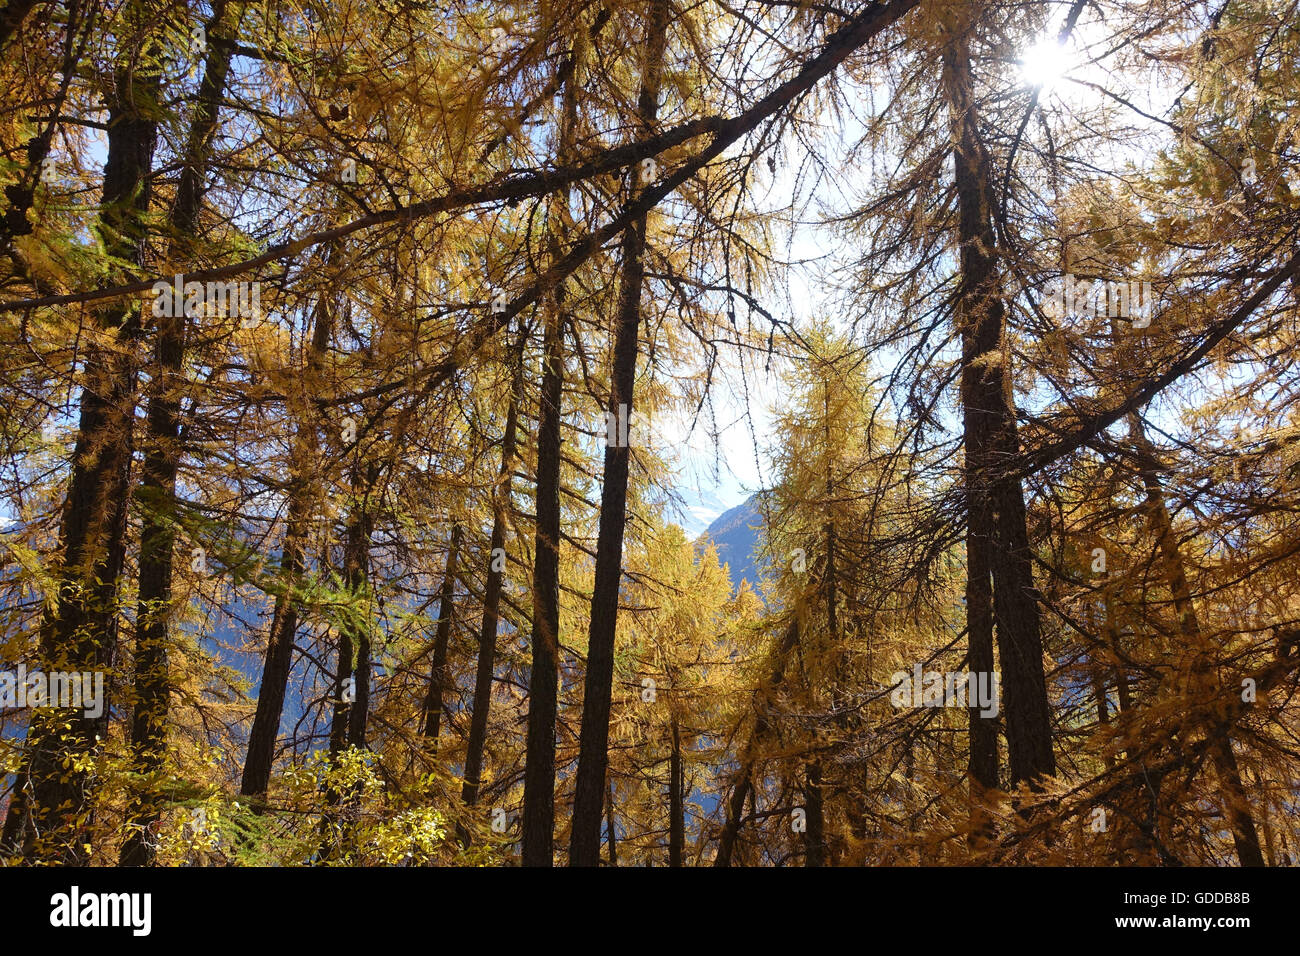 Switzerland,Europe,Valais,Mund,wood,forest,Salwald,larches,autumn Stock Photo